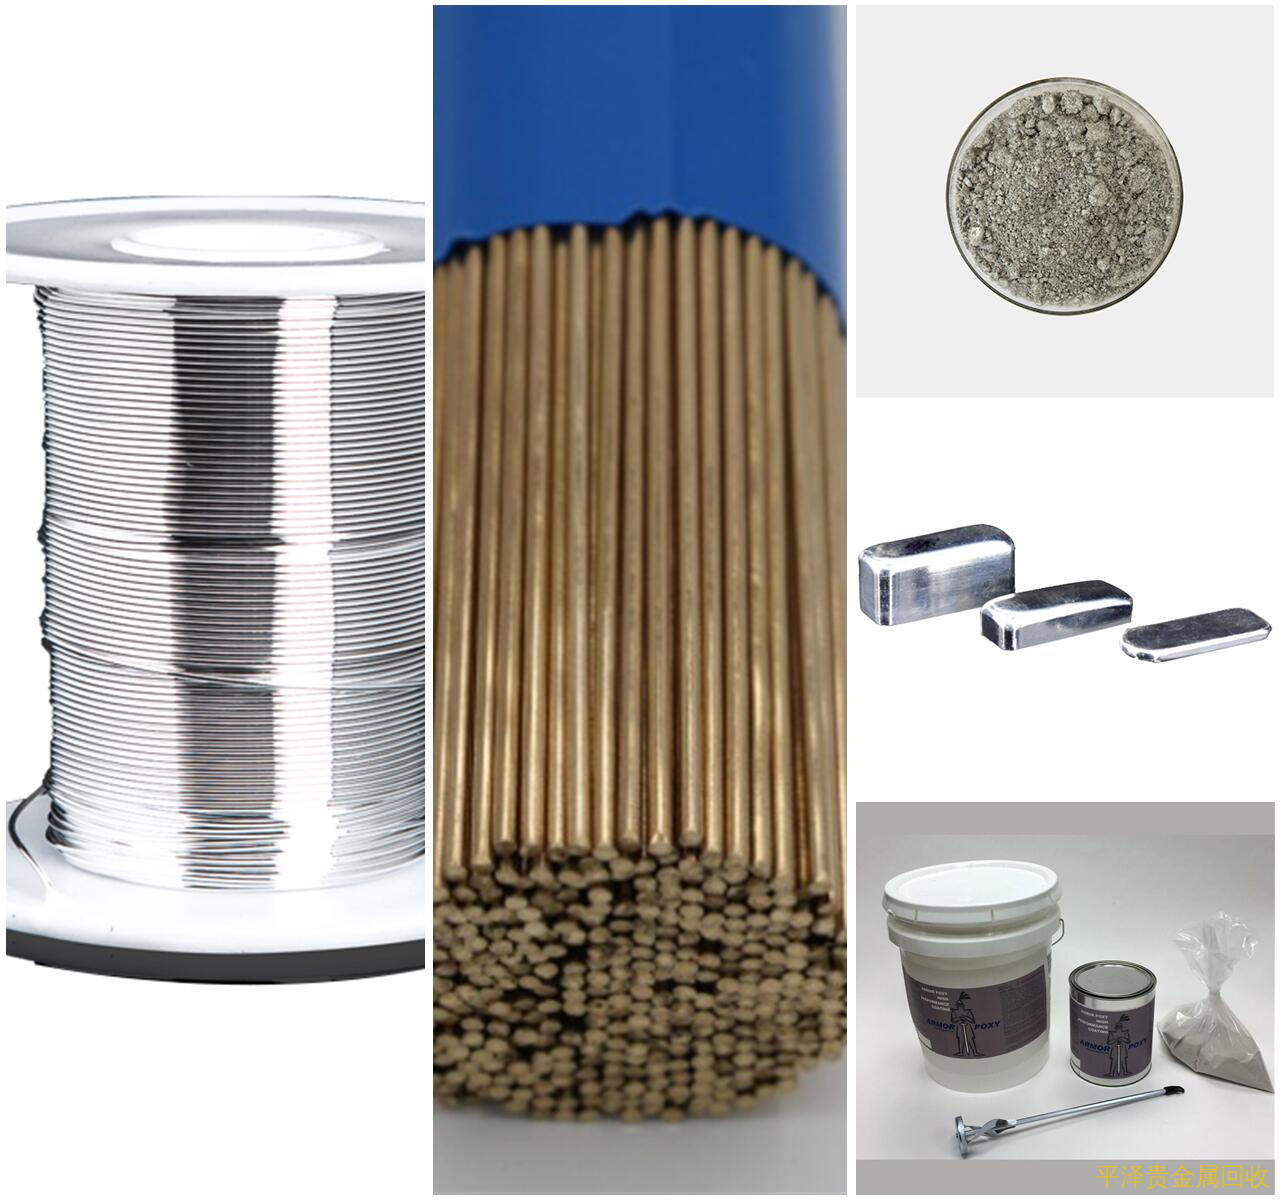 废银焊丝贵金属相关材料回收再利用是多少钱 2020银焊条回收今天价目表